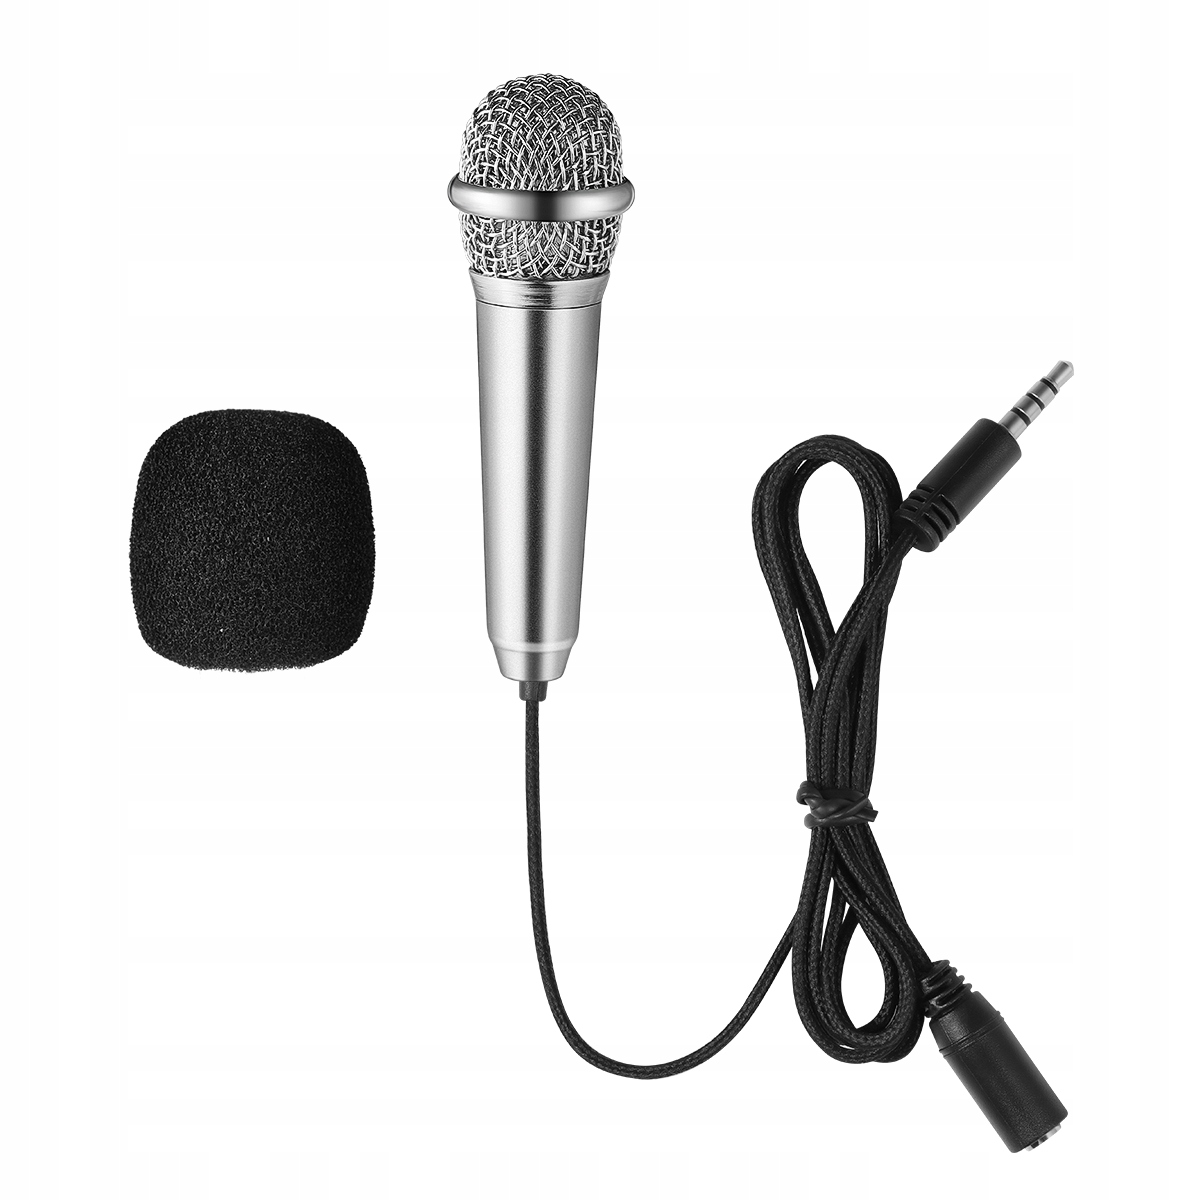 Malý mikrofon za 179 Kč - Allegro